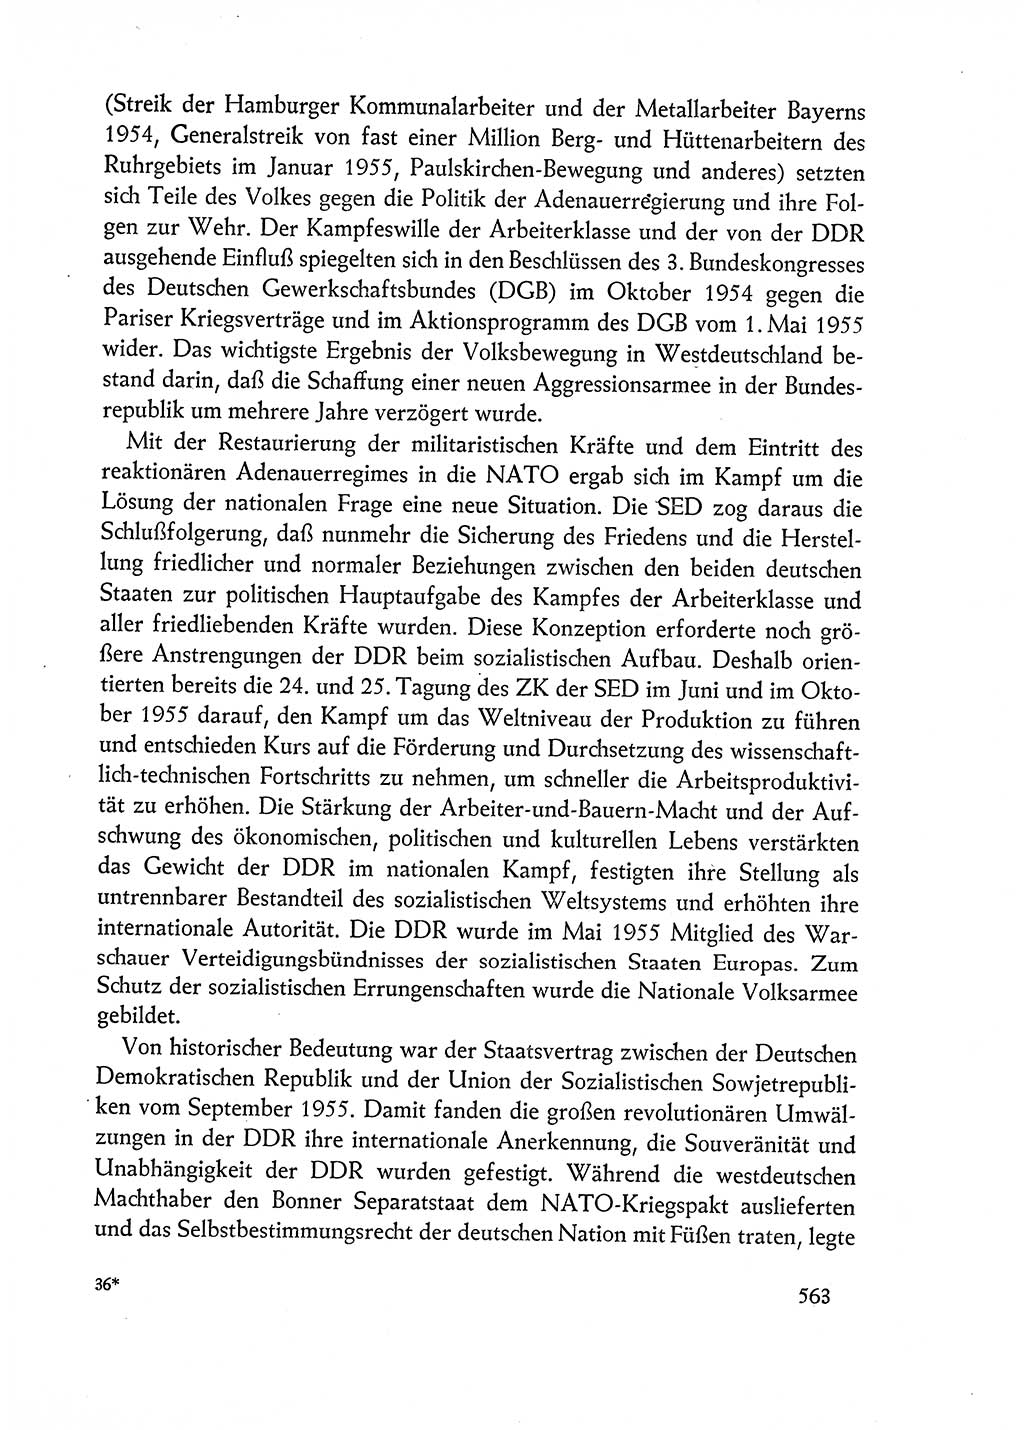 Dokumente der Sozialistischen Einheitspartei Deutschlands (SED) [Deutsche Demokratische Republik (DDR)] 1962-1963, Seite 563 (Dok. SED DDR 1962-1963, S. 563)